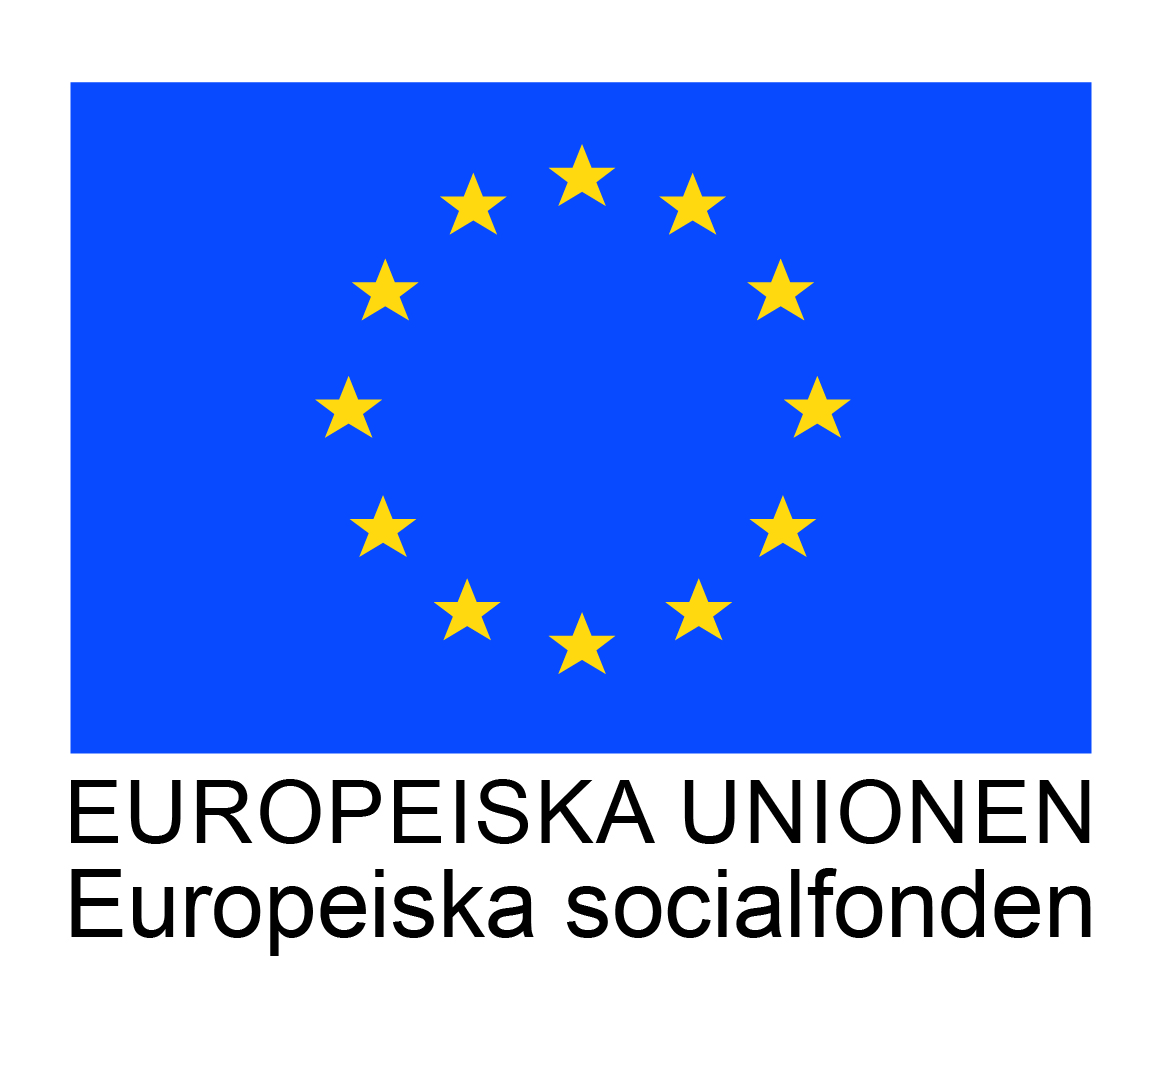 EU_flagga_EurSocfond_cmyk-arial_700-1